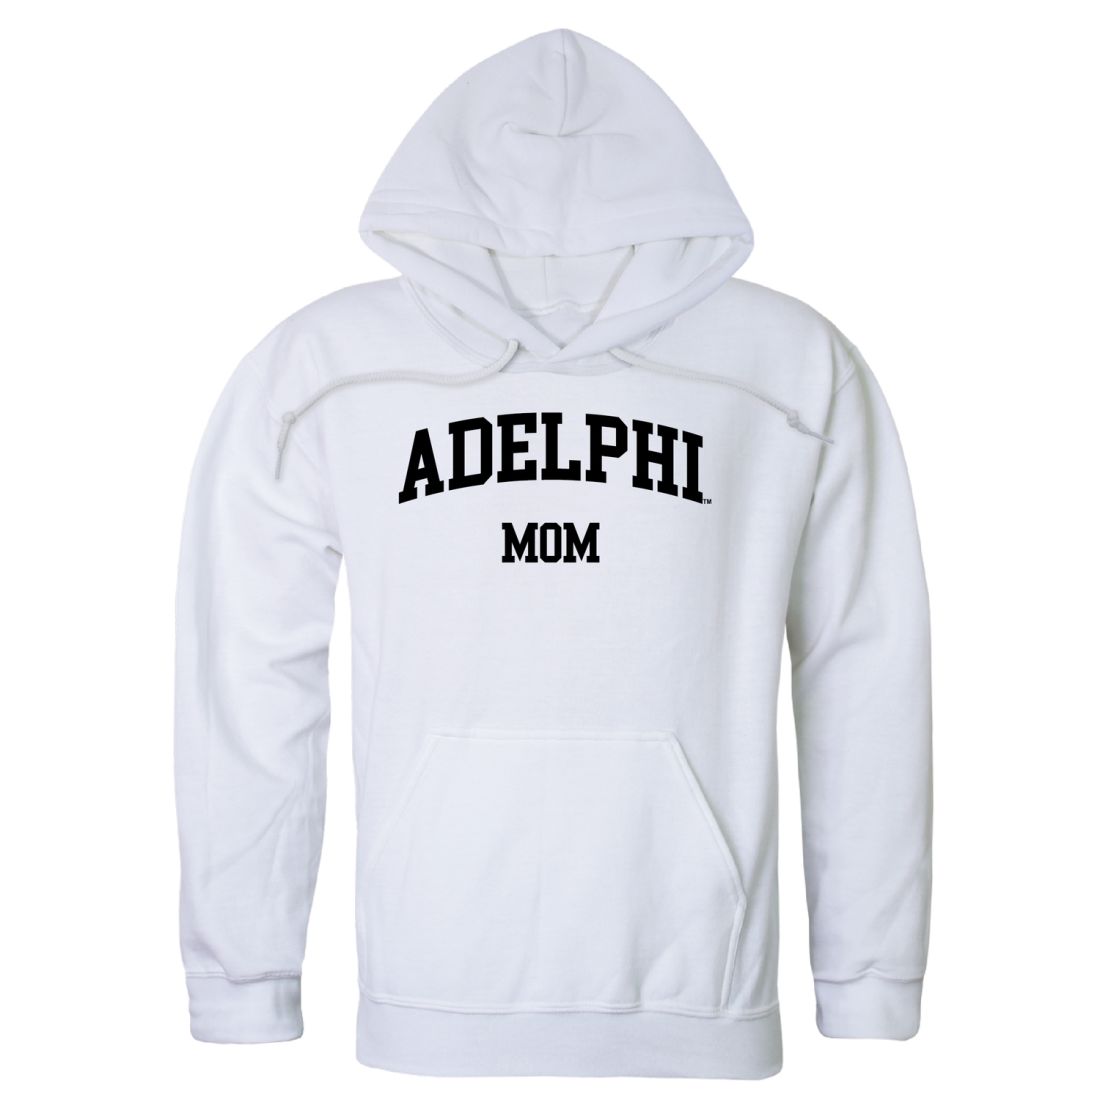 Adelphi University Panthers Mom Fleece Hoodie Sweatshirts